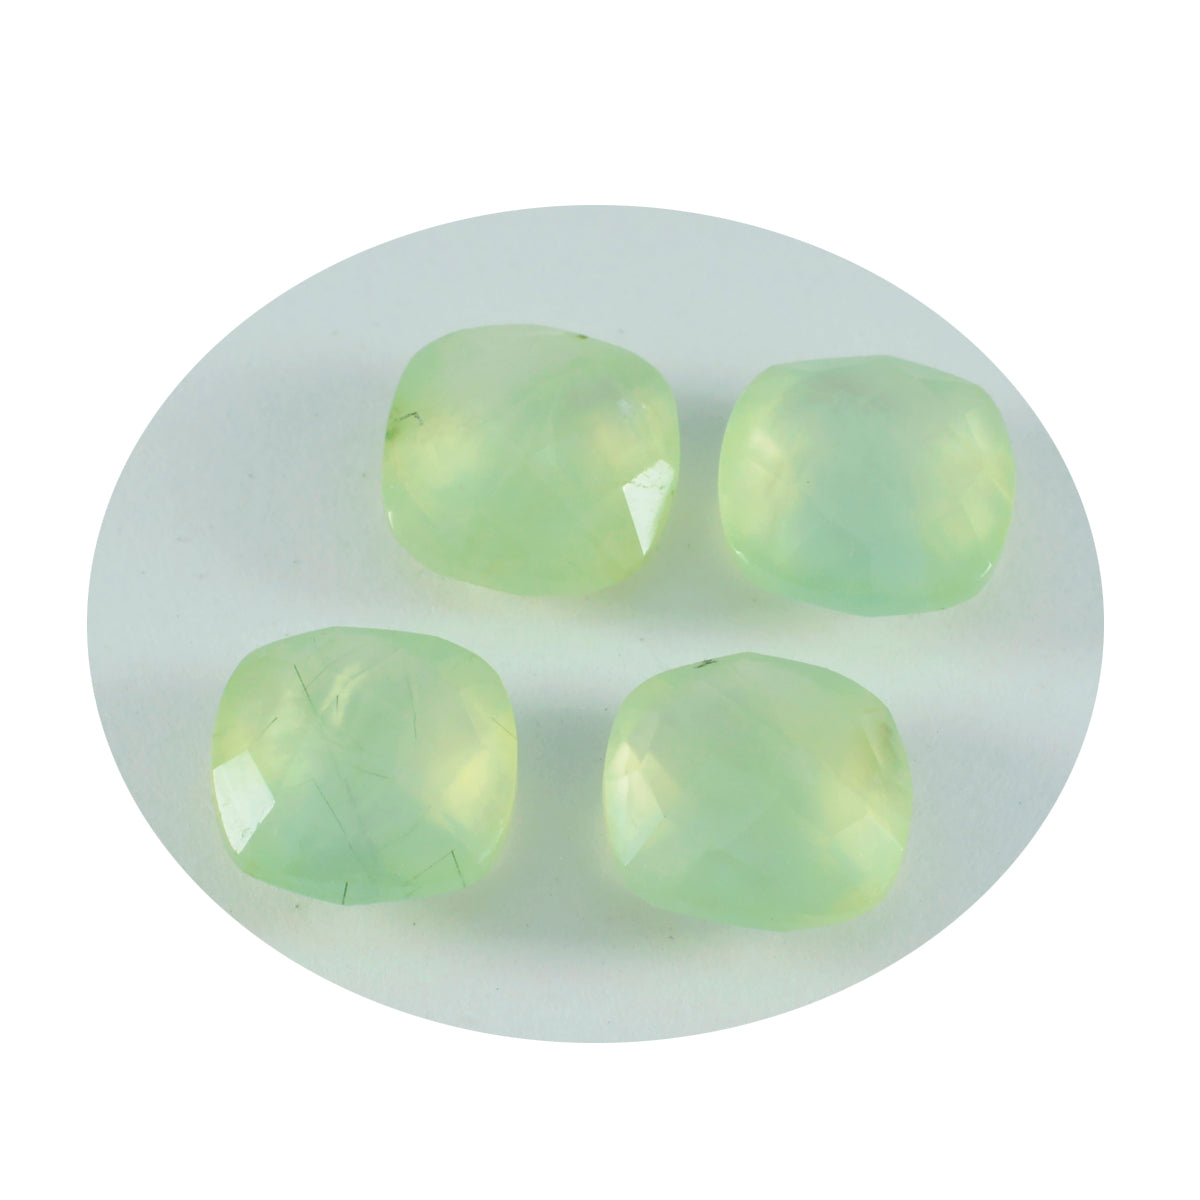 Riyogems 1 Stück grüner Prehnit, facettiert, 10 x 10 mm, Kissenform, schöne, hochwertige lose Edelsteine